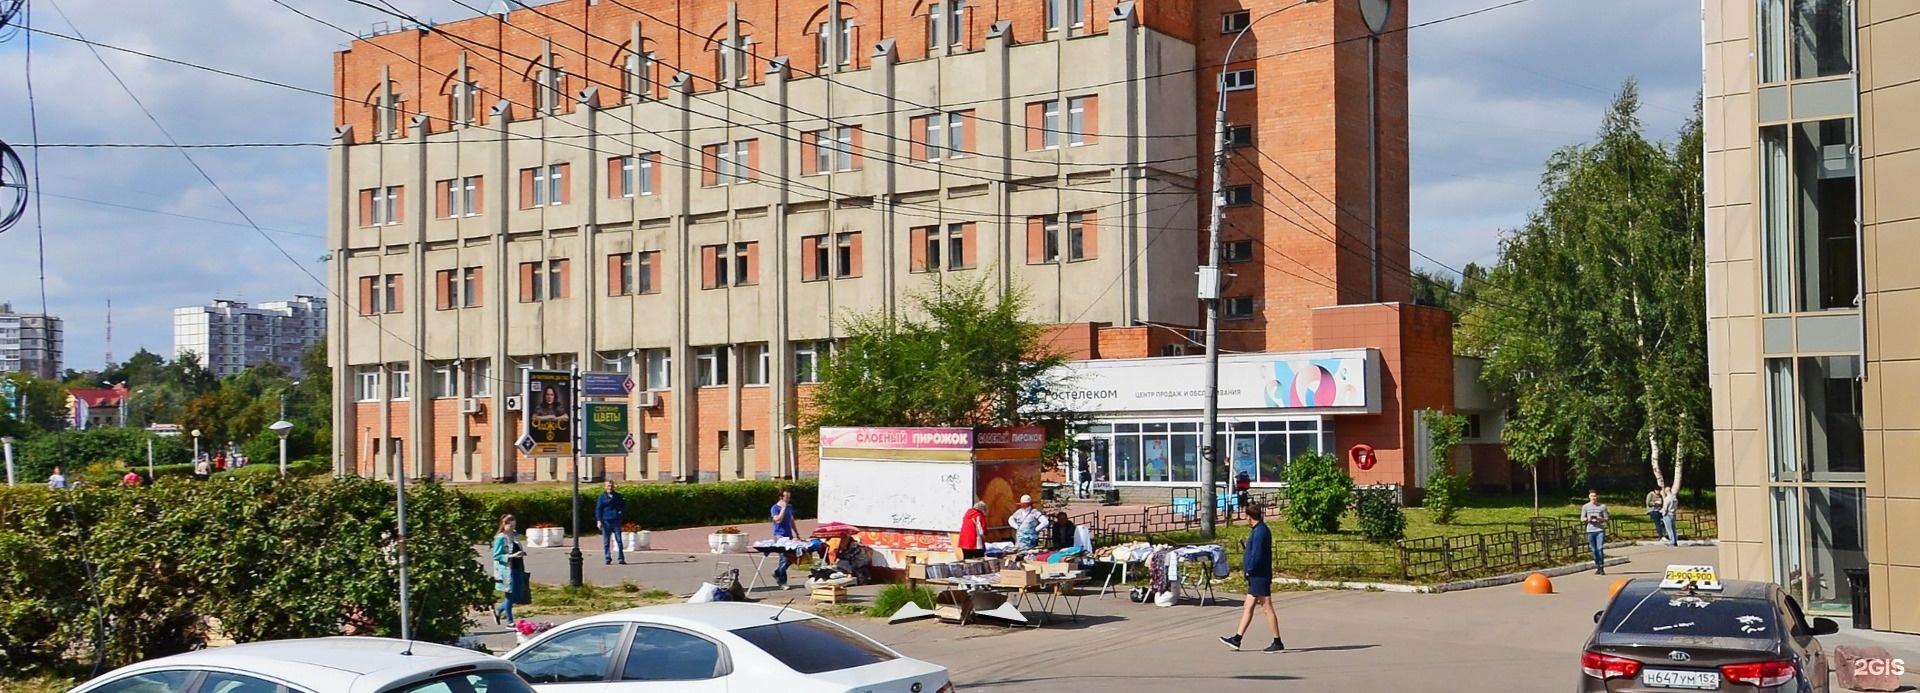 Площадь Советская Нижний Новгород